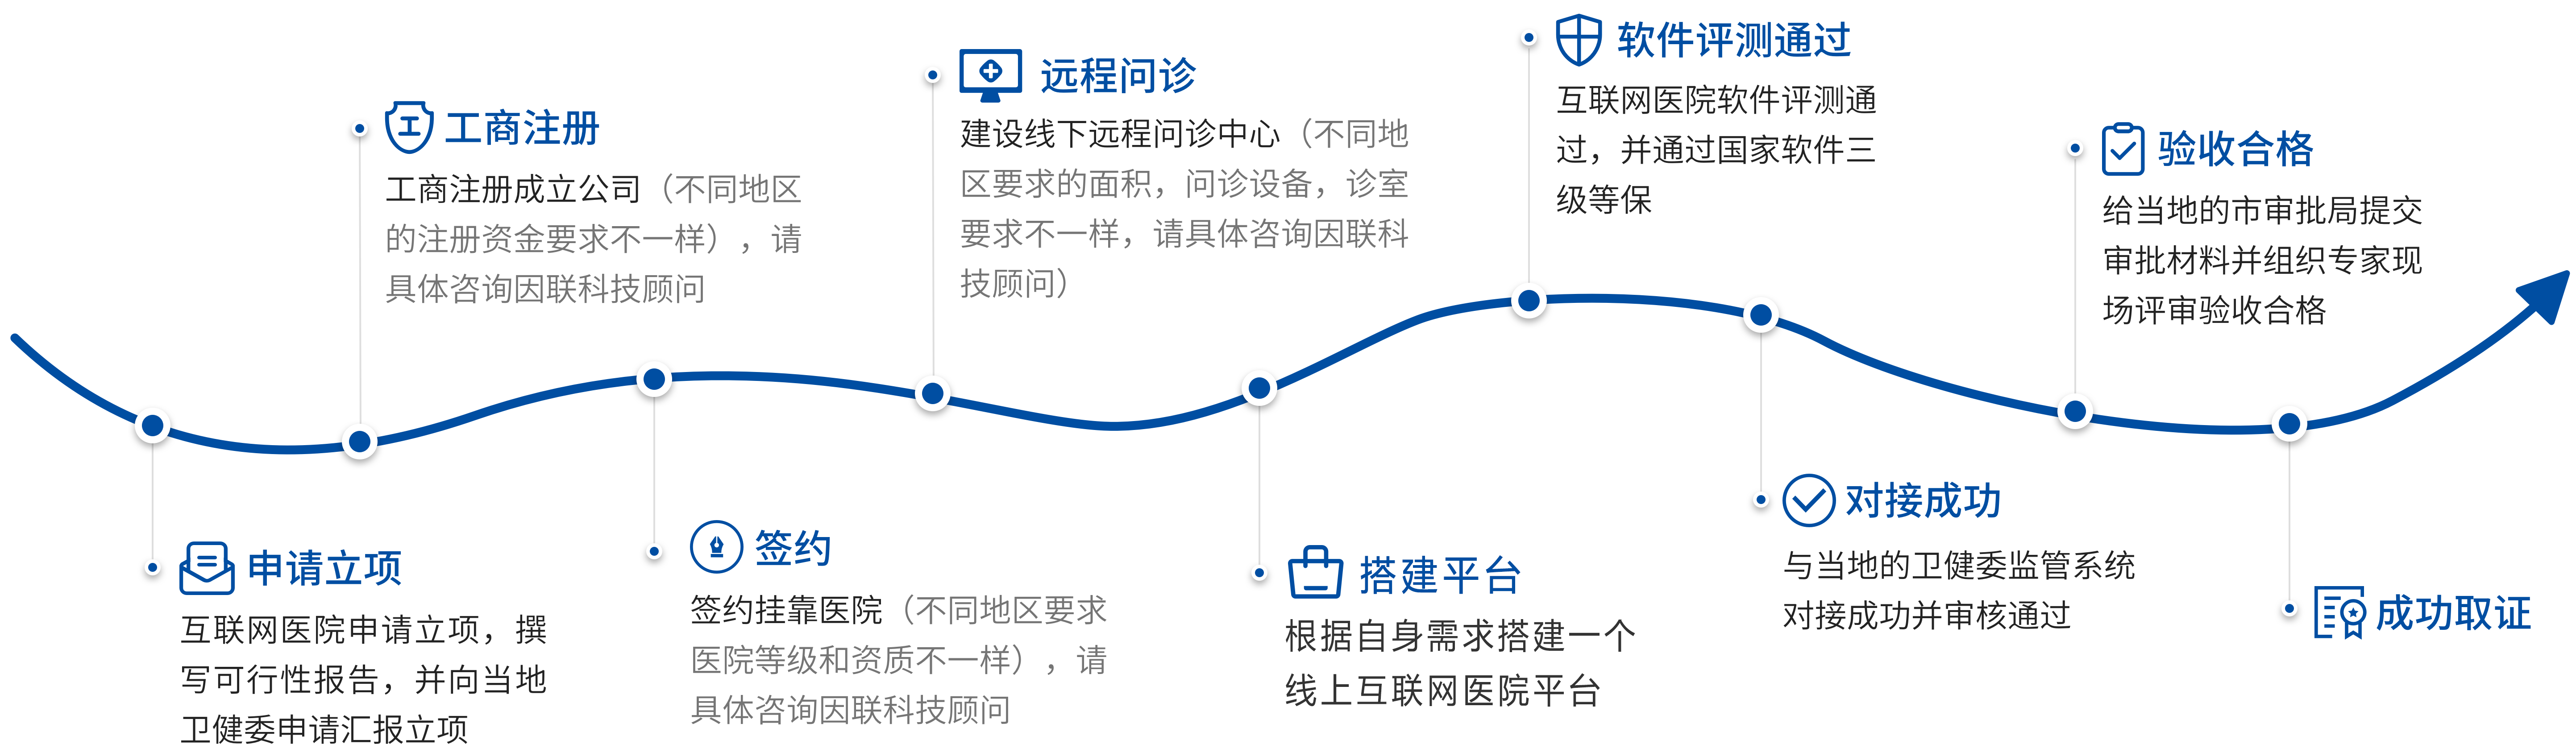 湖南省互联网医院牌照代办中介机构合作流程图